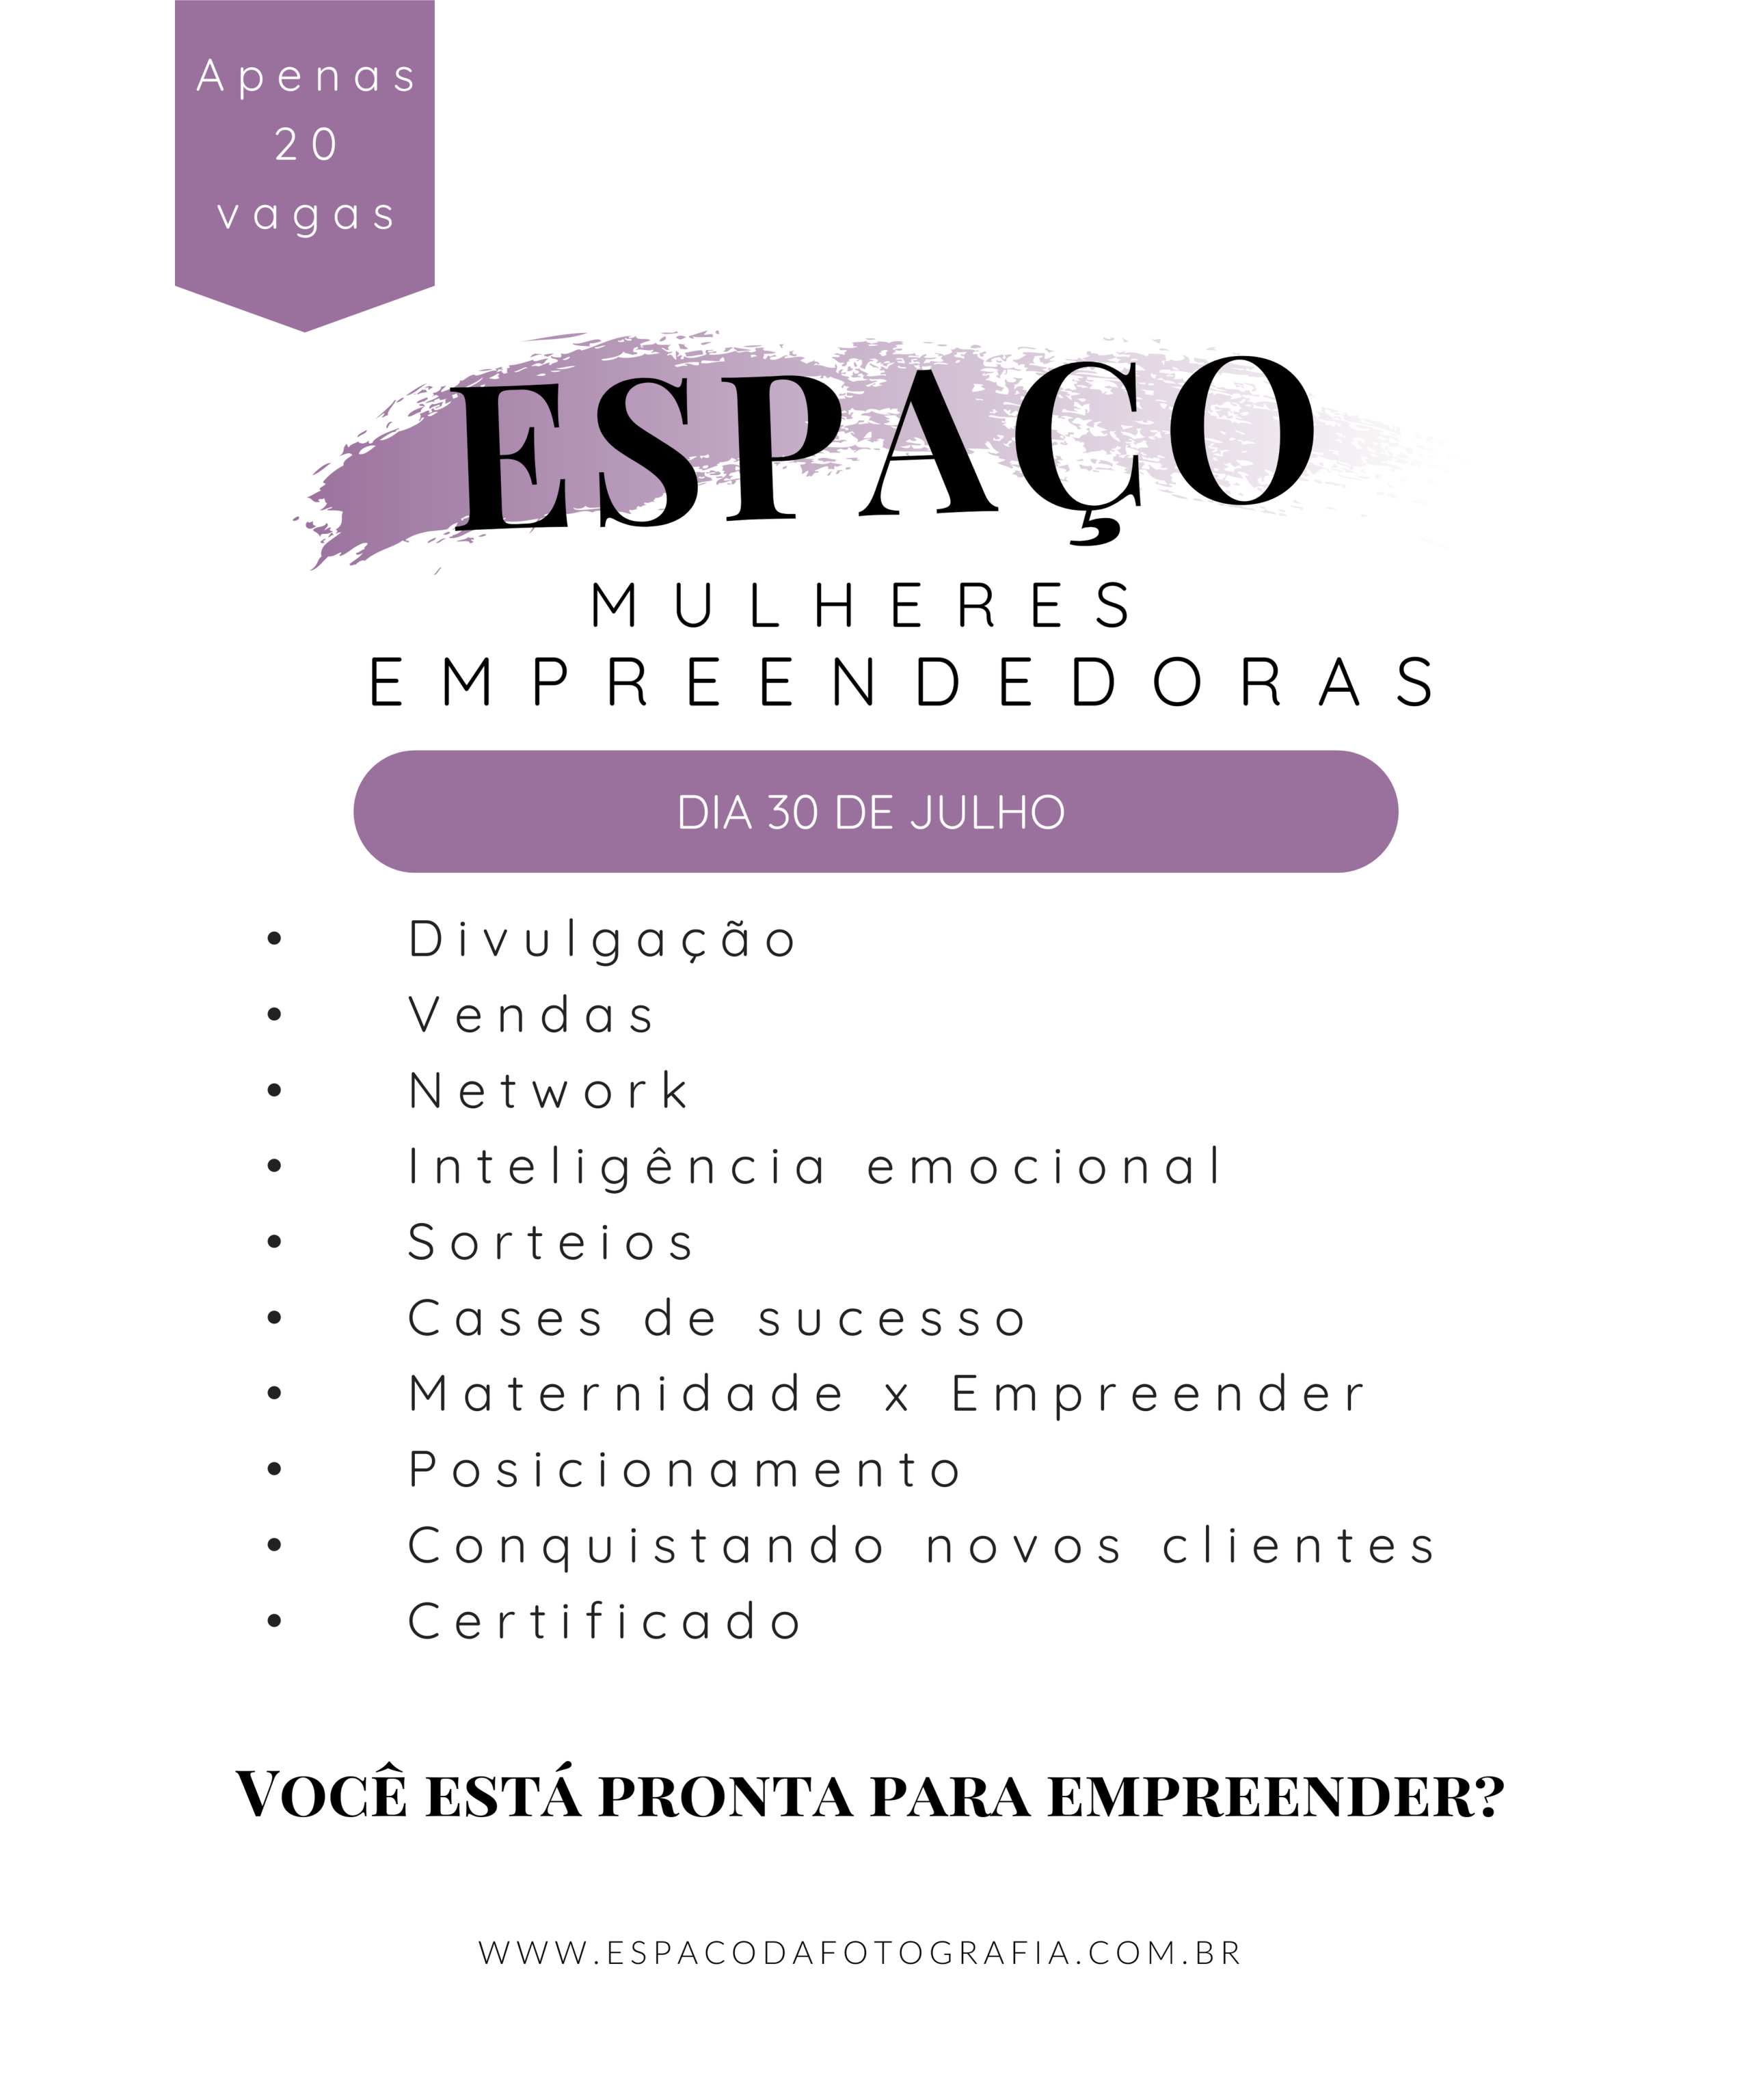 Espaço da Fotografia promove encontro para mulheres empreendedoras em SP